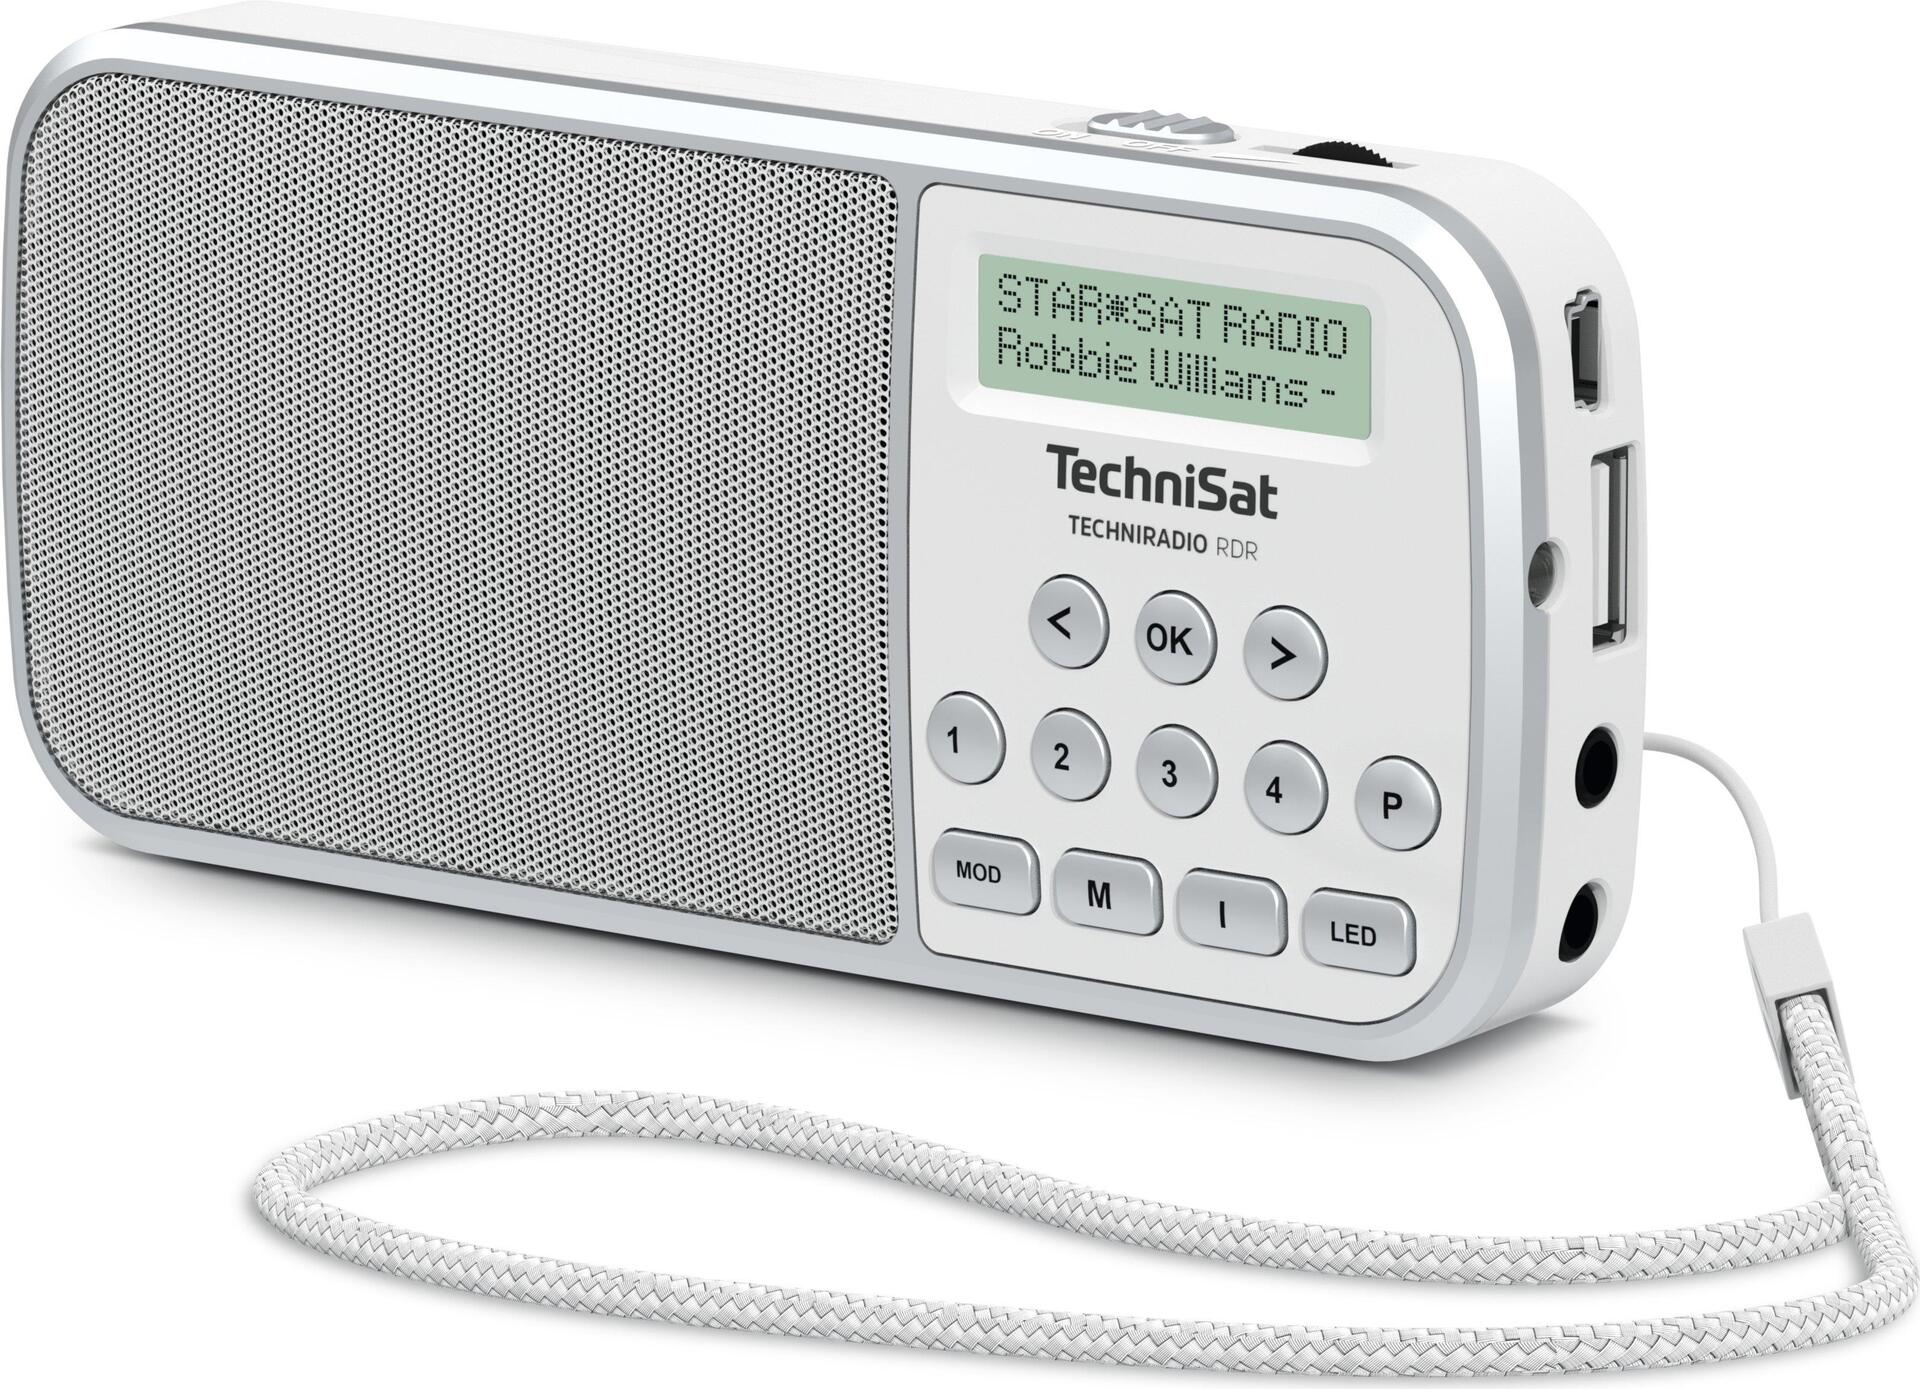 TechniSat TechniRadio RDR (0001/3922)